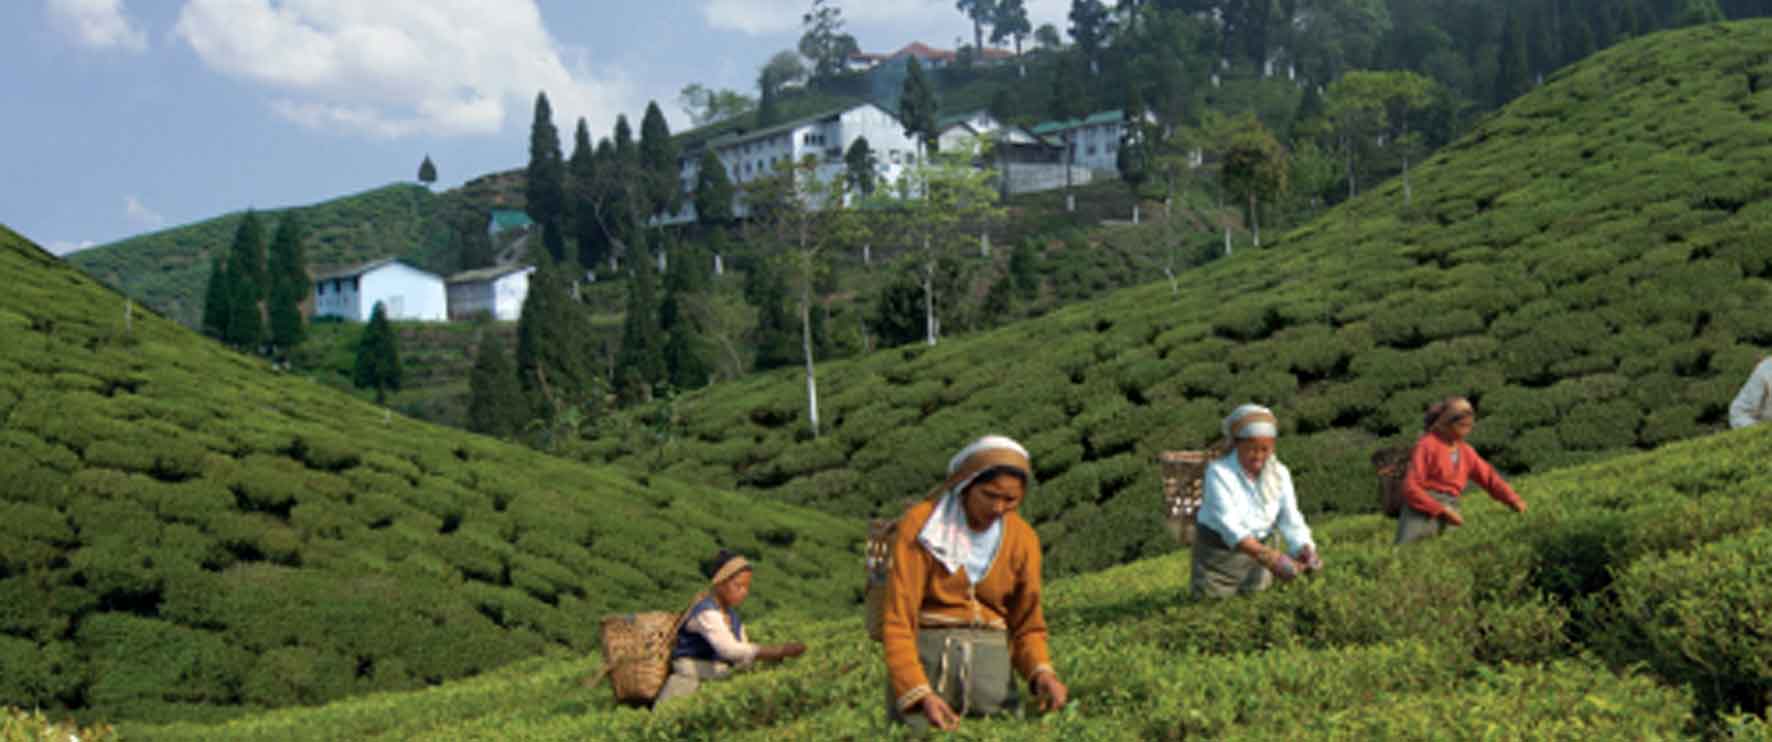 Workers gathering tea leaves in Darjeeling region